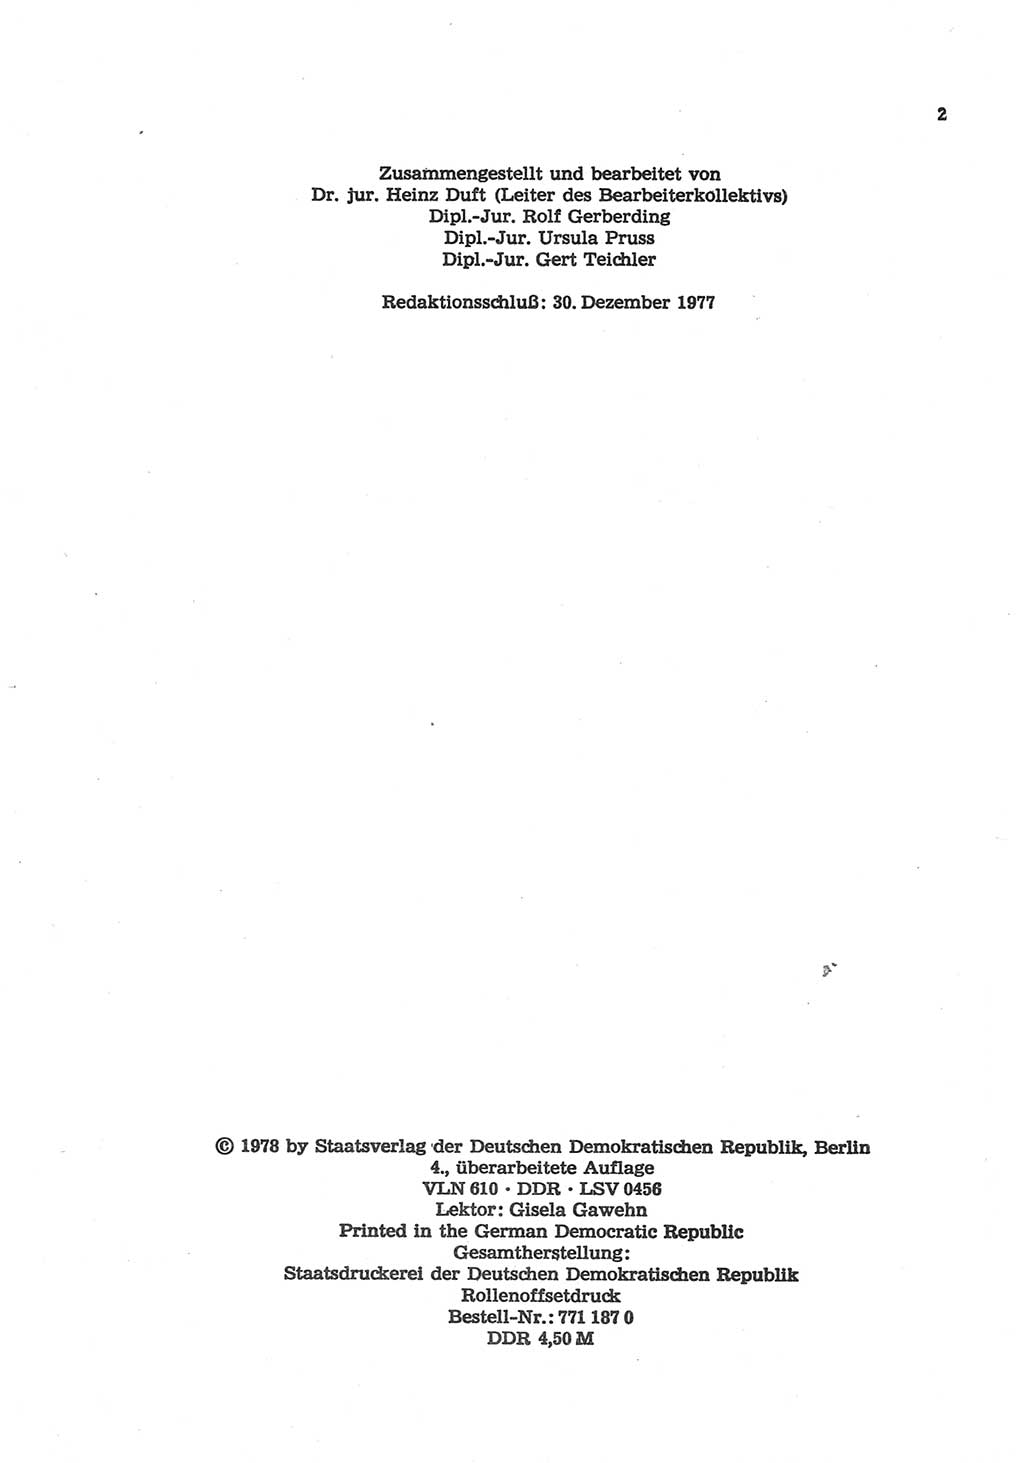 Strafgesetzbuch (StGB) der Deutschen Demokratischen Republik (DDR) und angrenzende Gesetze und Bestimmungen 1977, Seite 2 (StGB DDR Ges. Best. 1977, S. 2)